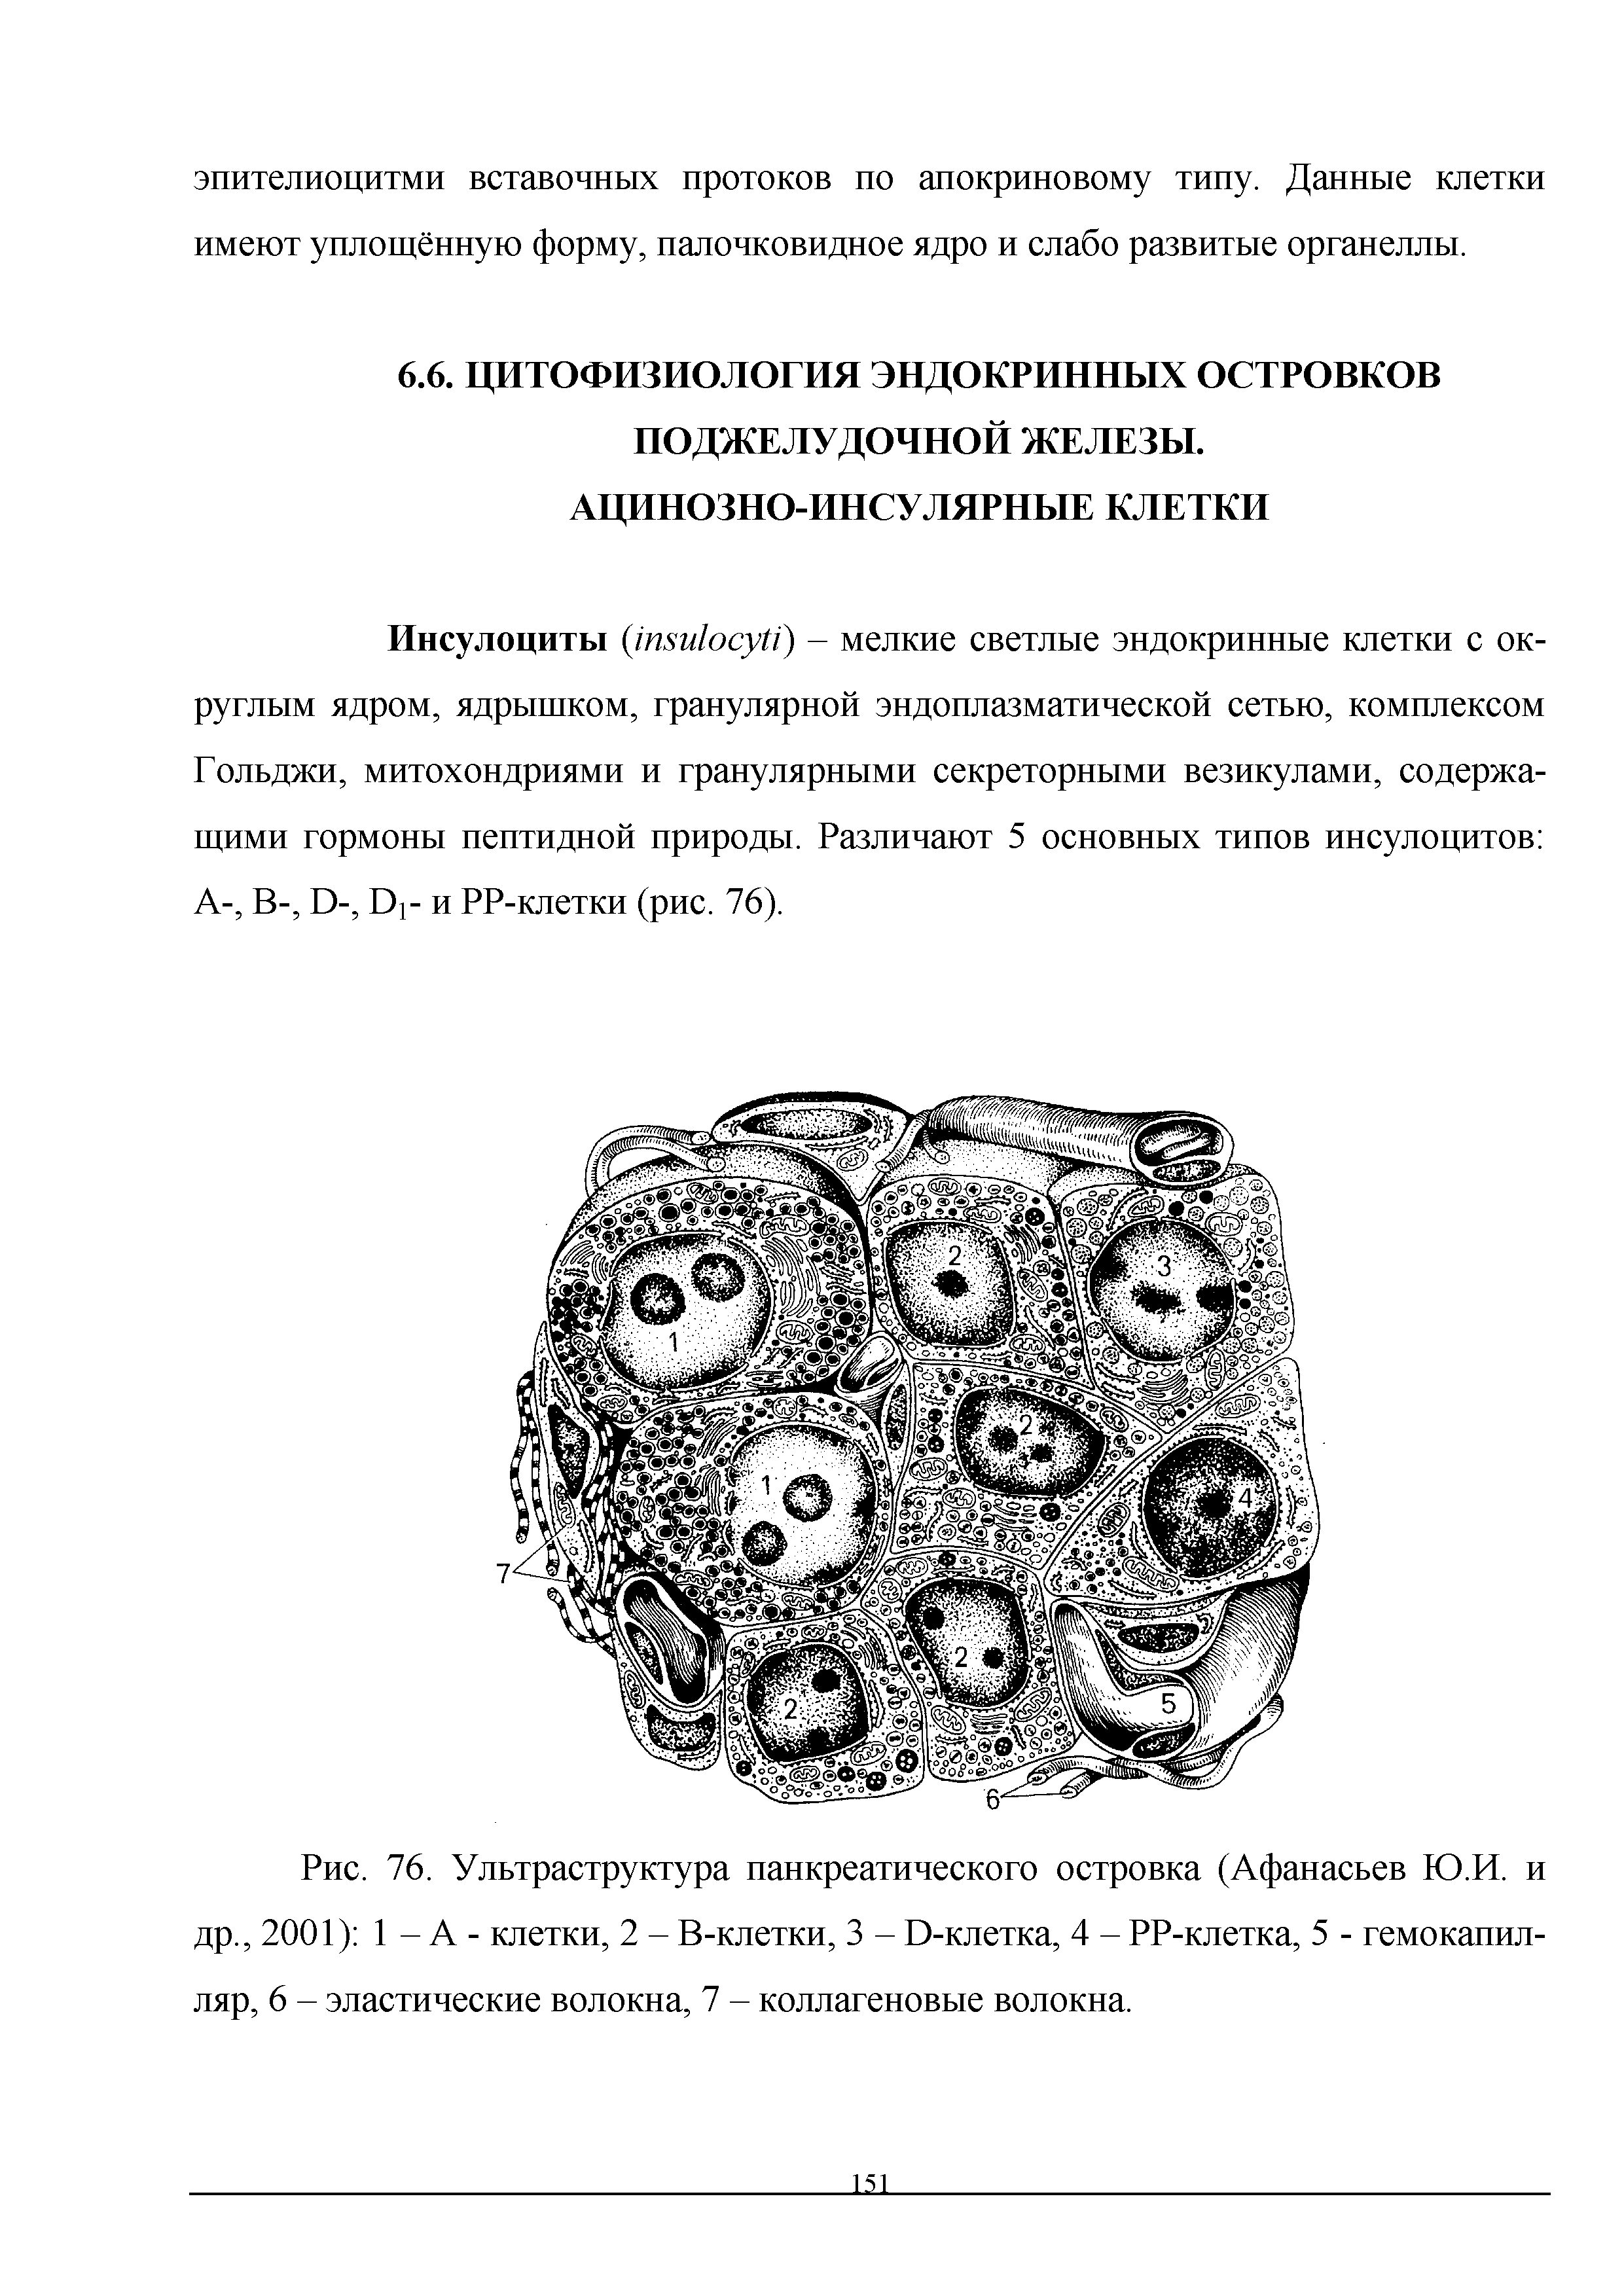 Рис. 76. Ультраструктура панкреатического островка (Афанасьев Ю.И. и др., 2001) 1 - А - клетки, 2 - В-клетки, 3 - 0-клетка, 4 - РР-клетка, 5 - гемокапилляр, 6 - эластические волокна, 7 - коллагеновые волокна.